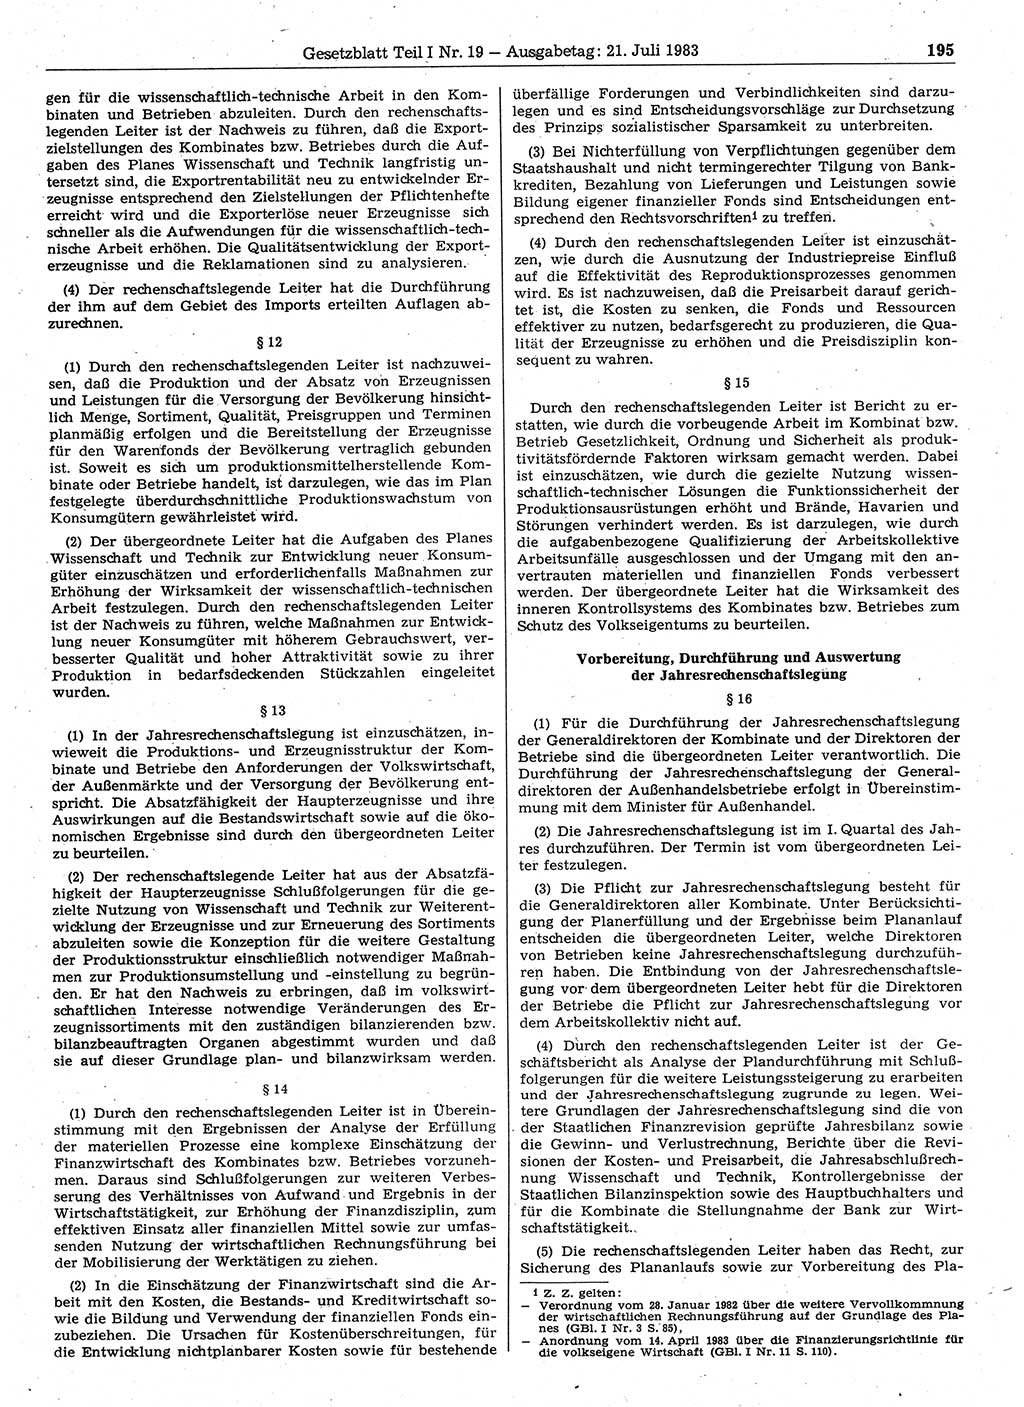 Gesetzblatt (GBl.) der Deutschen Demokratischen Republik (DDR) Teil Ⅰ 1983, Seite 195 (GBl. DDR Ⅰ 1983, S. 195)